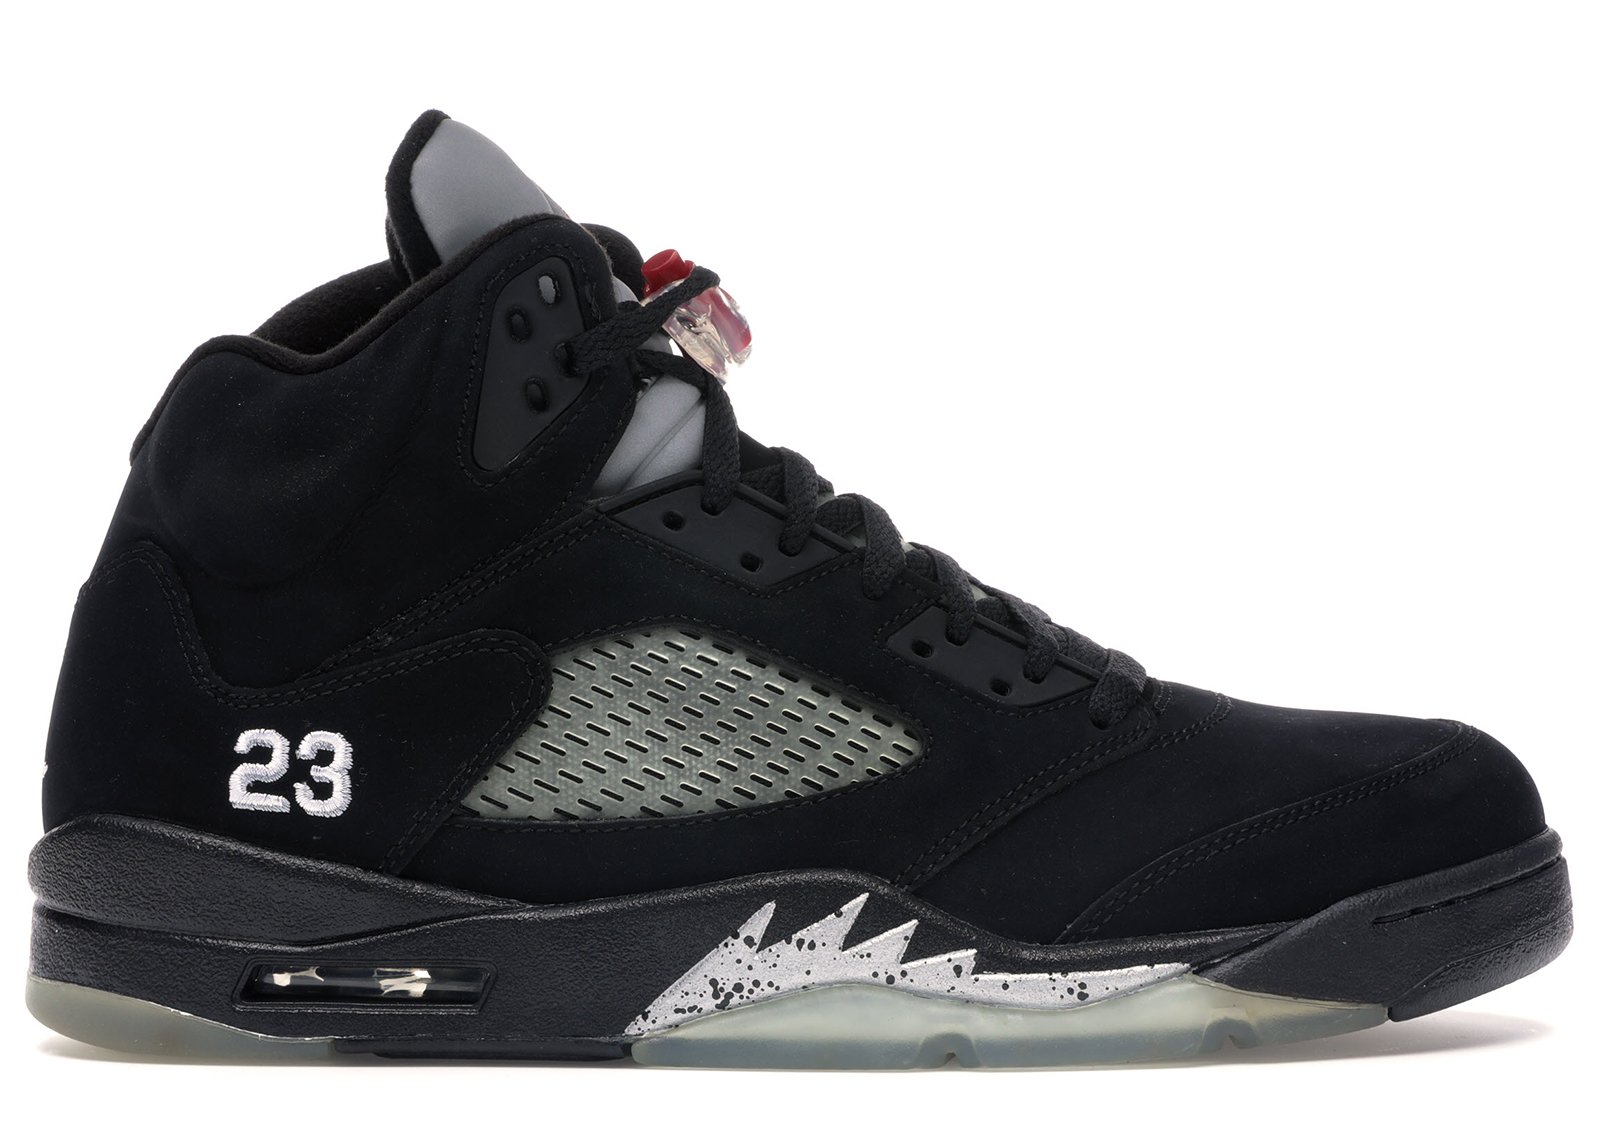 Jordan 5 Retro Black Metallic (2011) sneakers